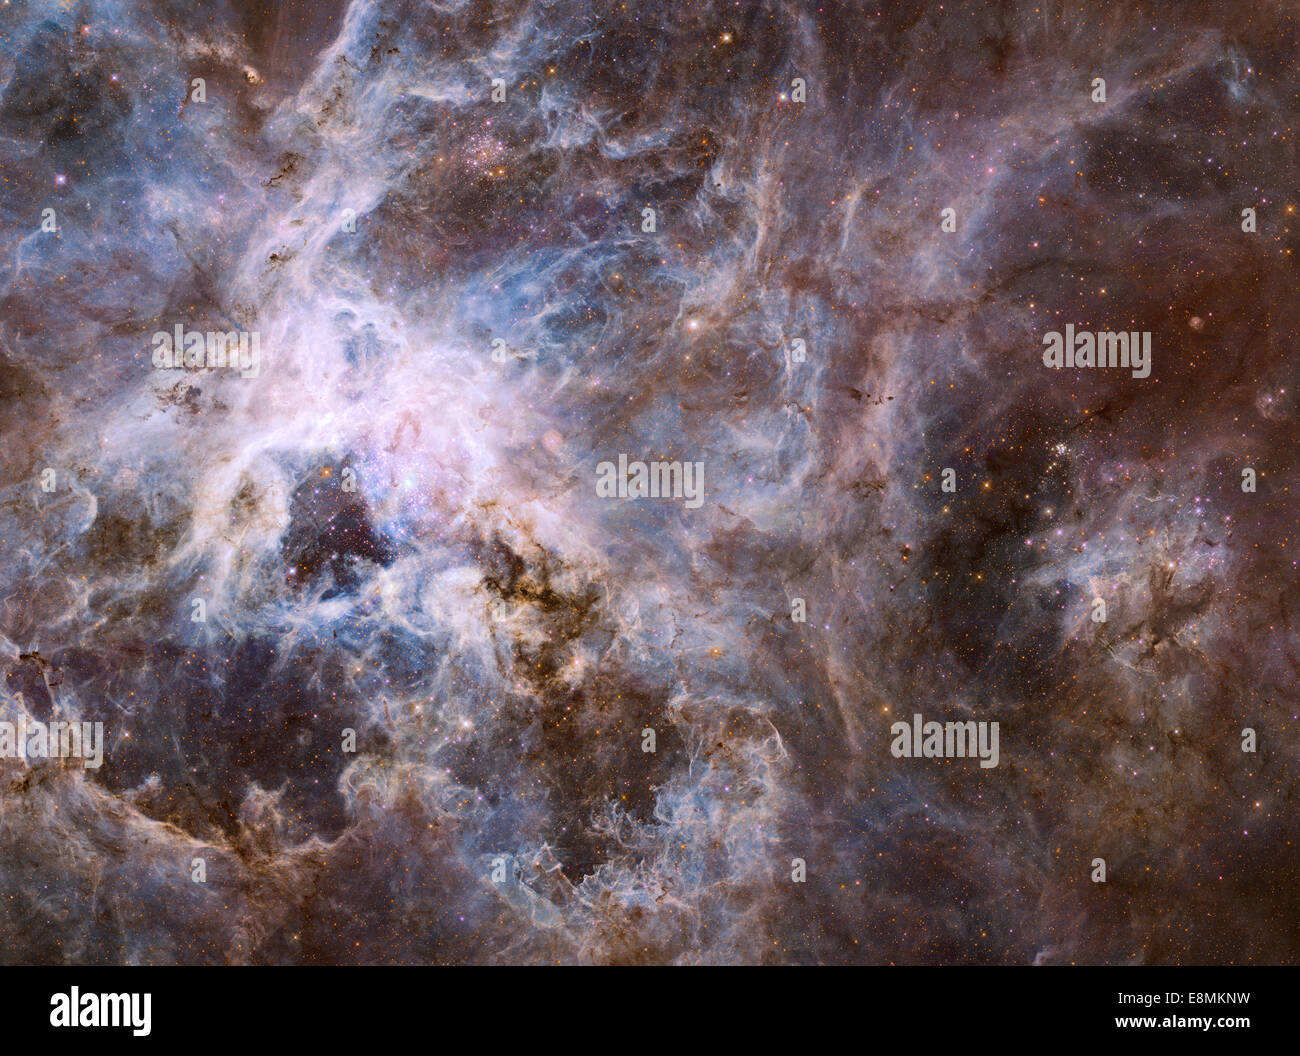 Wf vista di 30 Doradus, coprendo una larghezza di 600 anni luce, mostra una stella fabbrica di più di 800.000 stelle essendo nato. Th Foto Stock